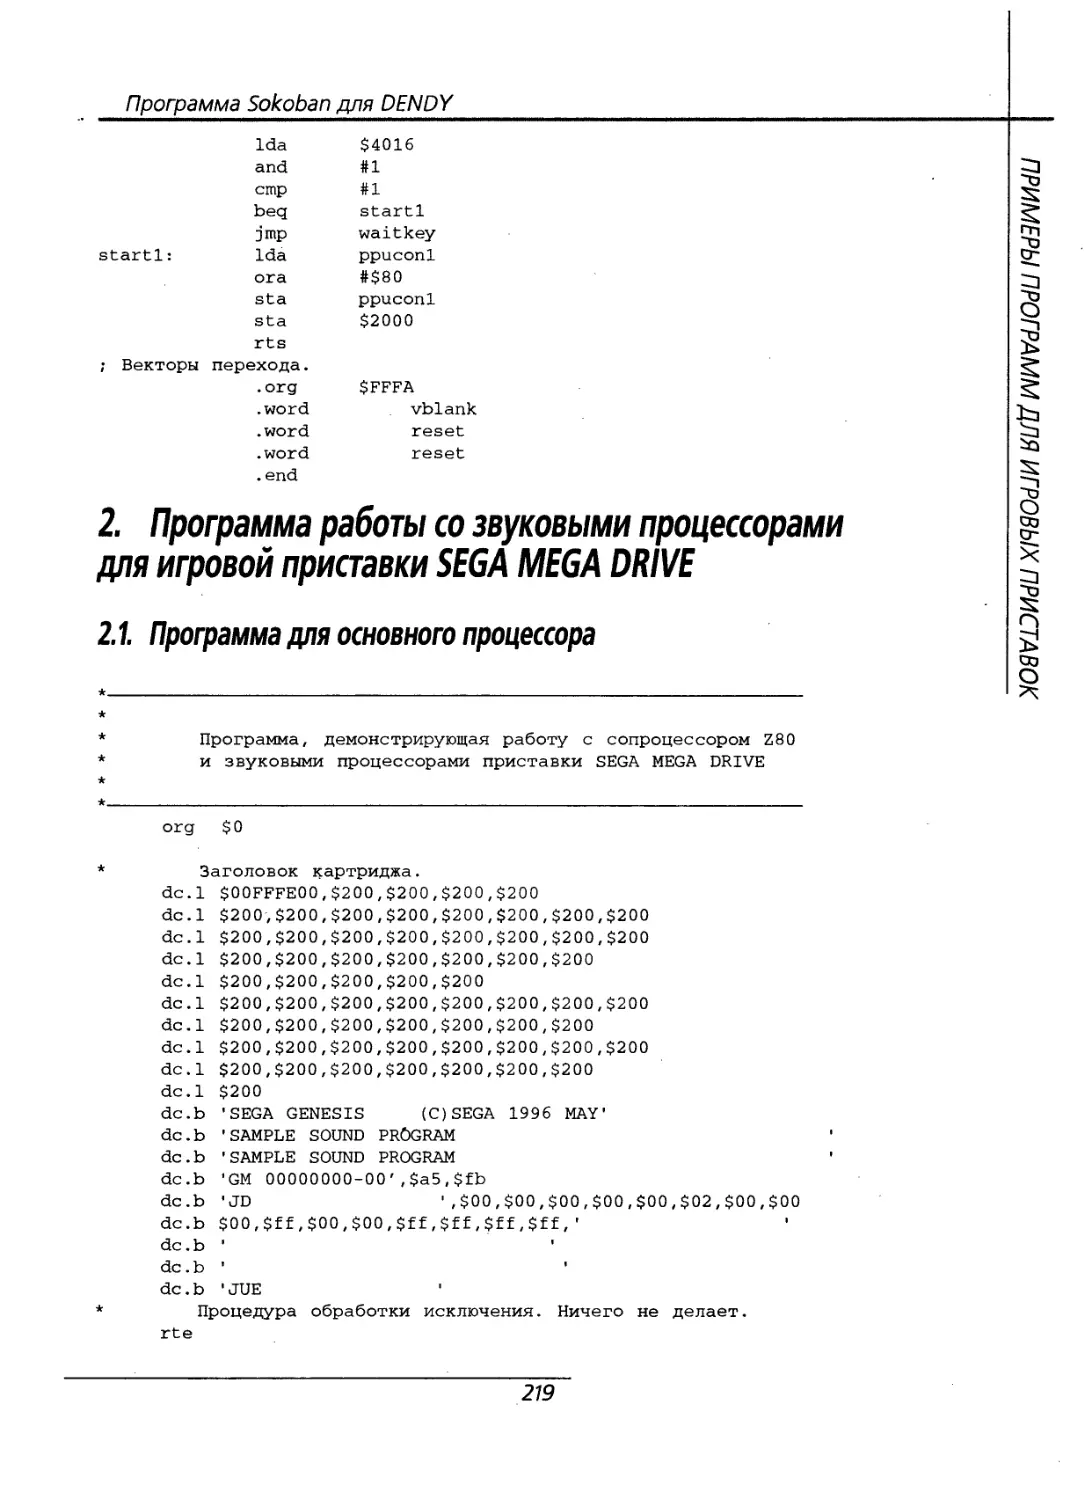 2. Программа работы со звуковыми процессорами для игровой приставки SEGA MEGA DRIVE